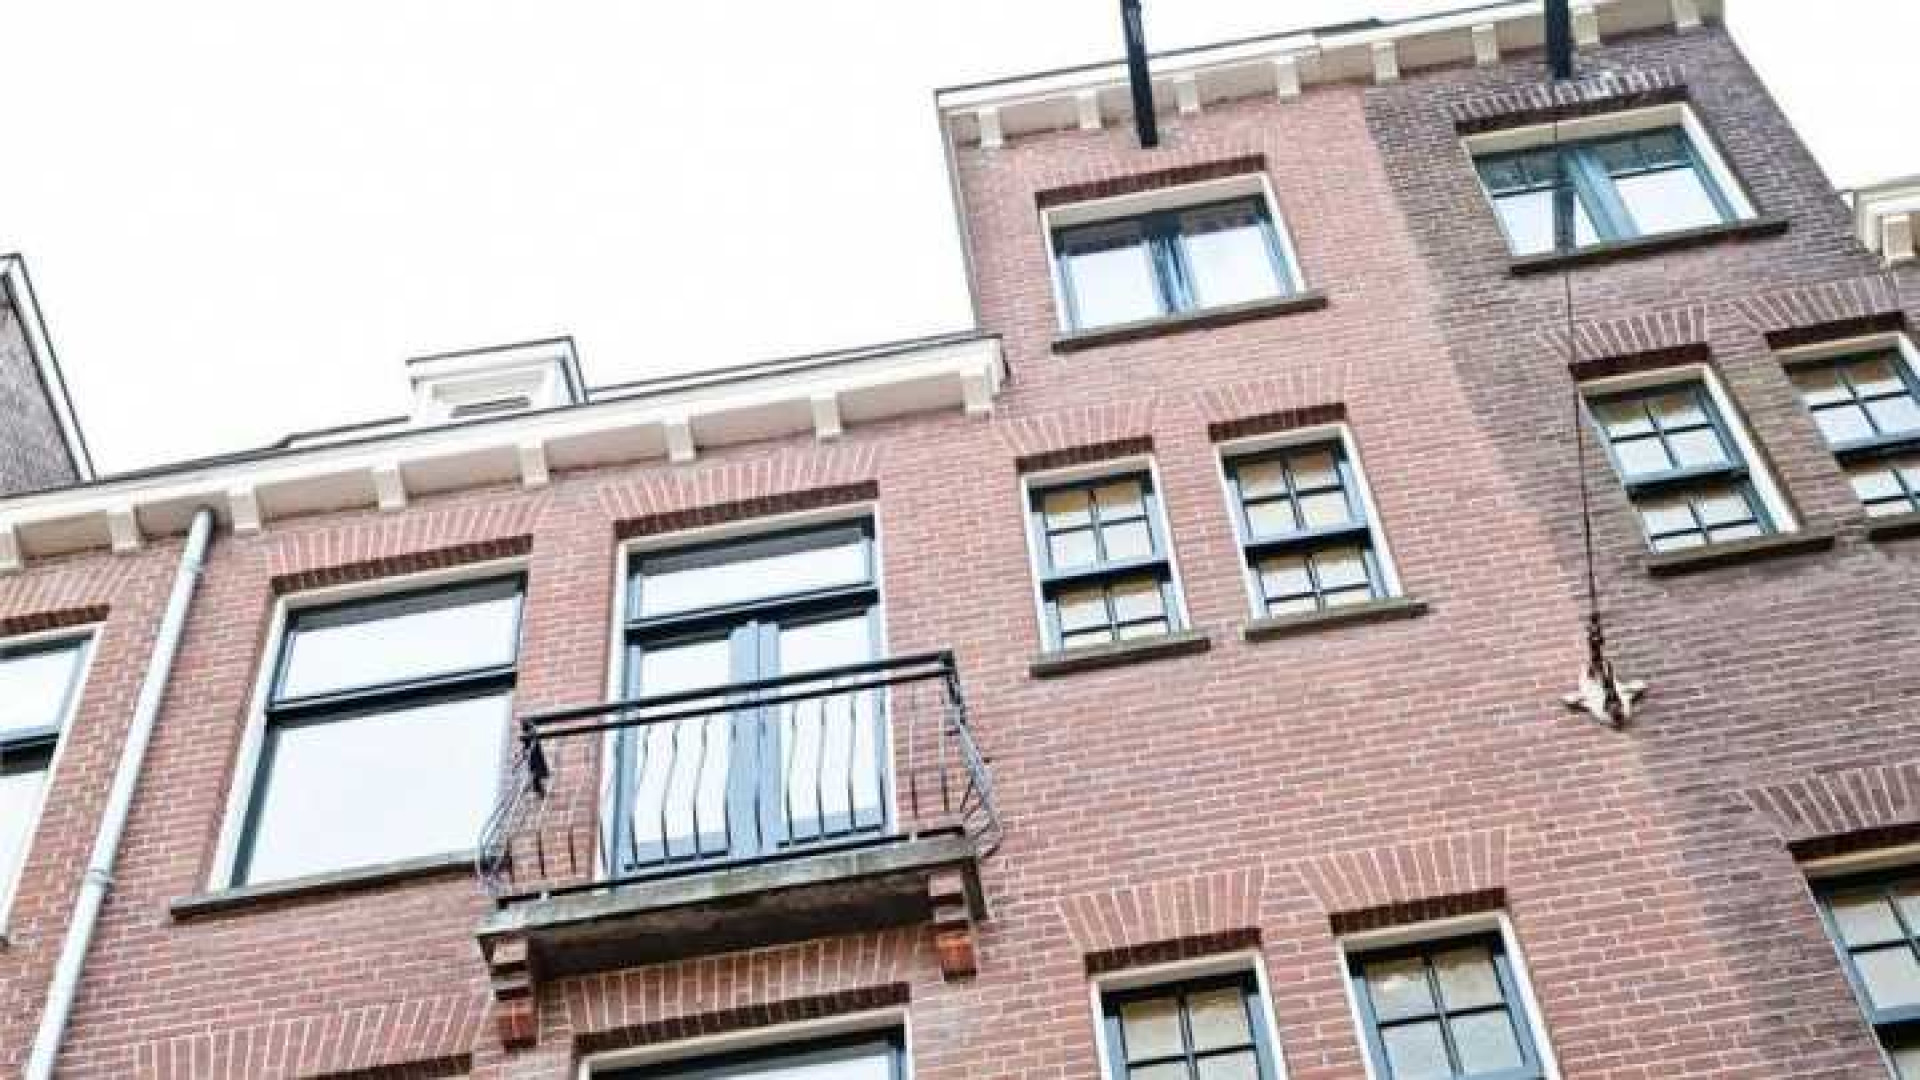 Assistent bondscoach Danny Blind koopt appartement in populaire Amsterdamse wijk. Zie foto's